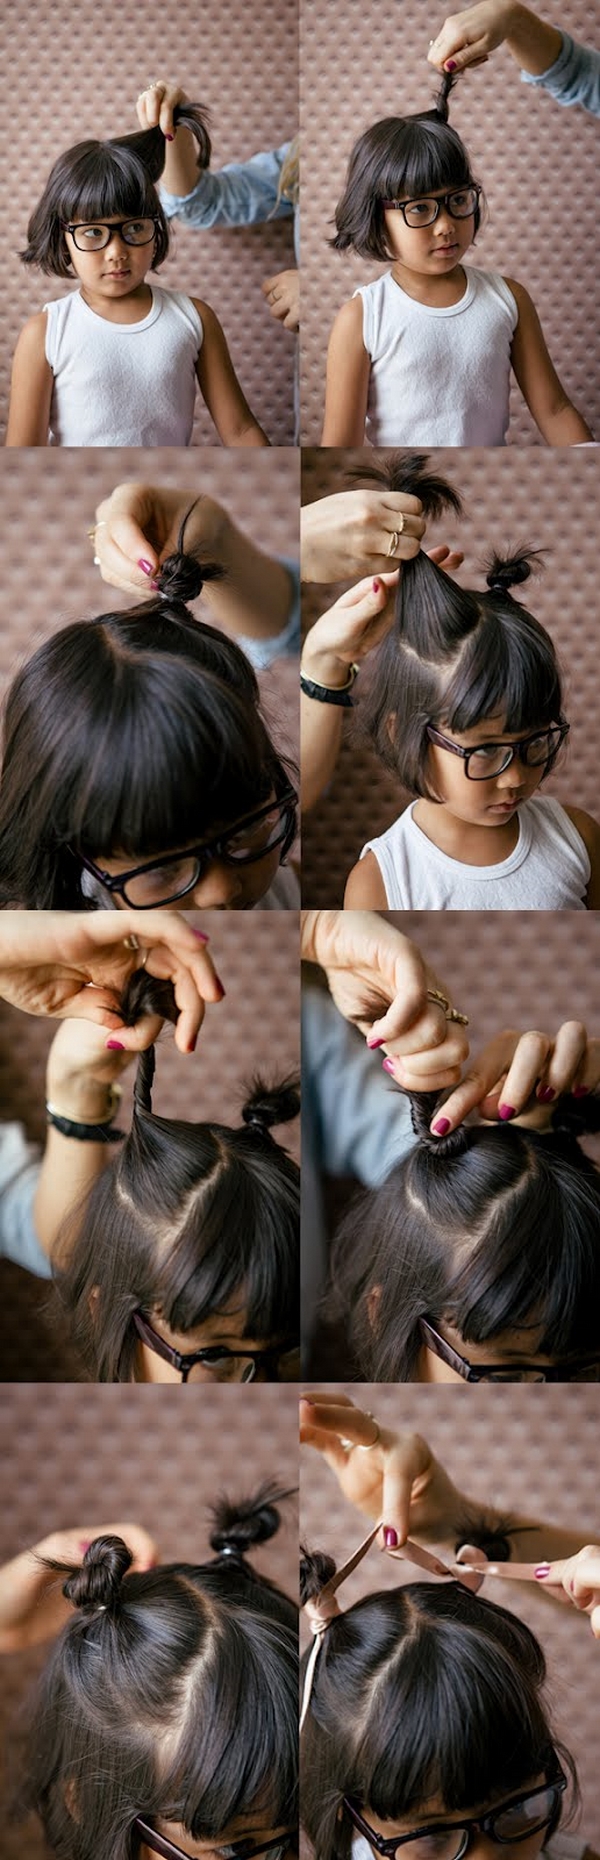 Einfache Frisuren für die Schule kleines Mädchen